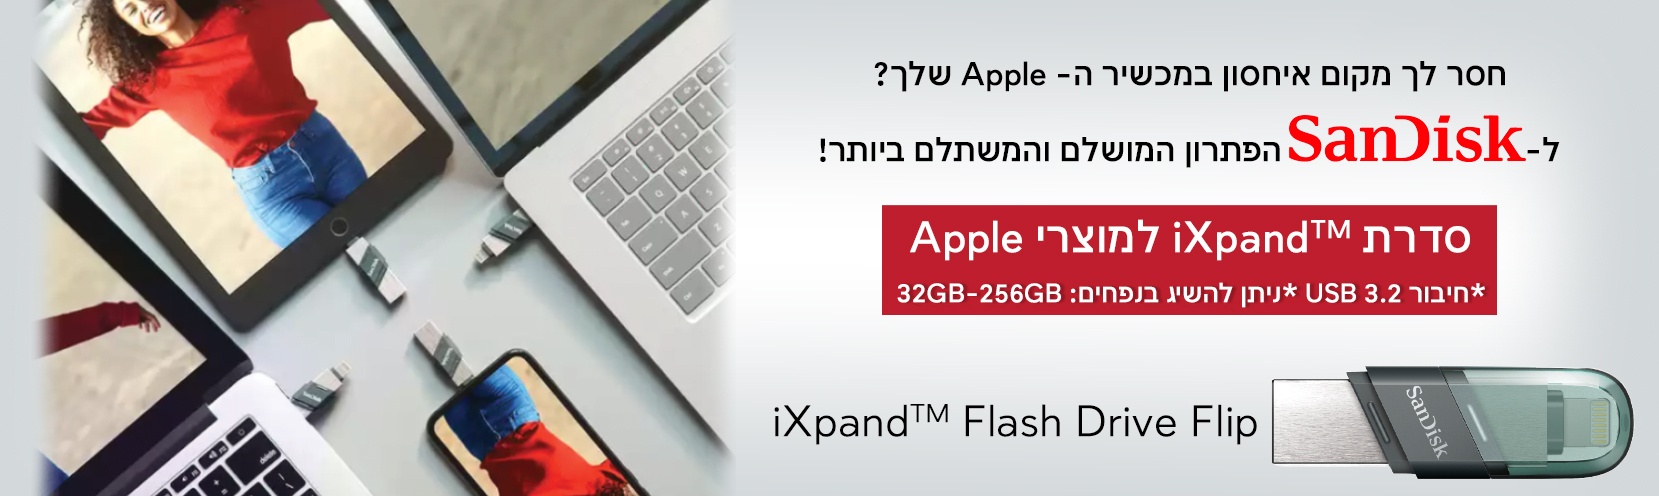 זיכרונות ניידים iXpand Flash Drive USB